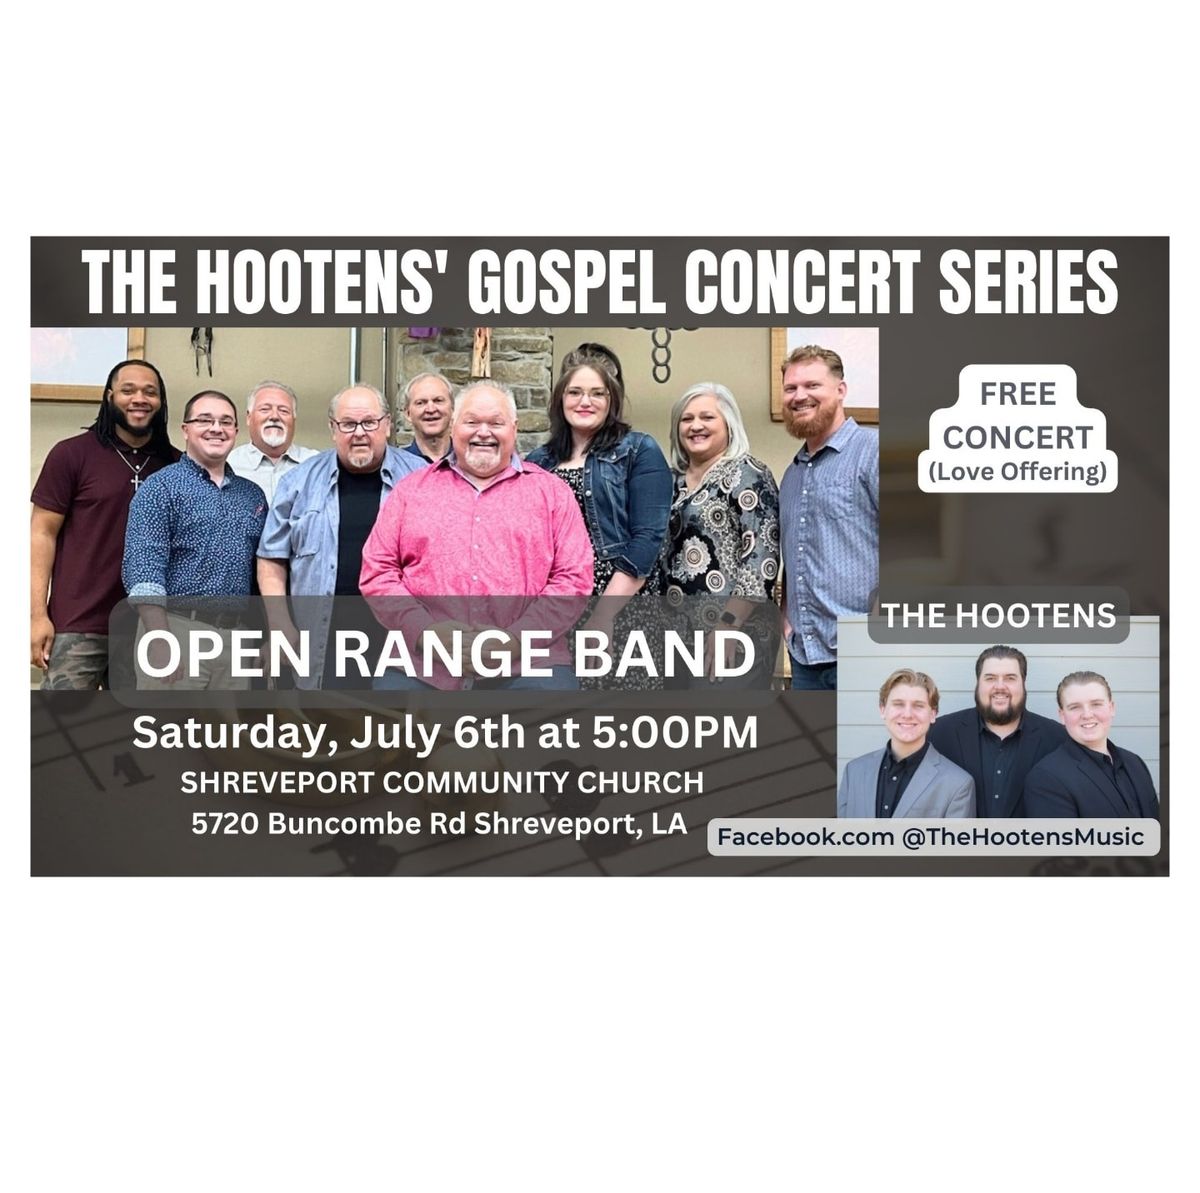 The Hootens' Gospel Concert Series 